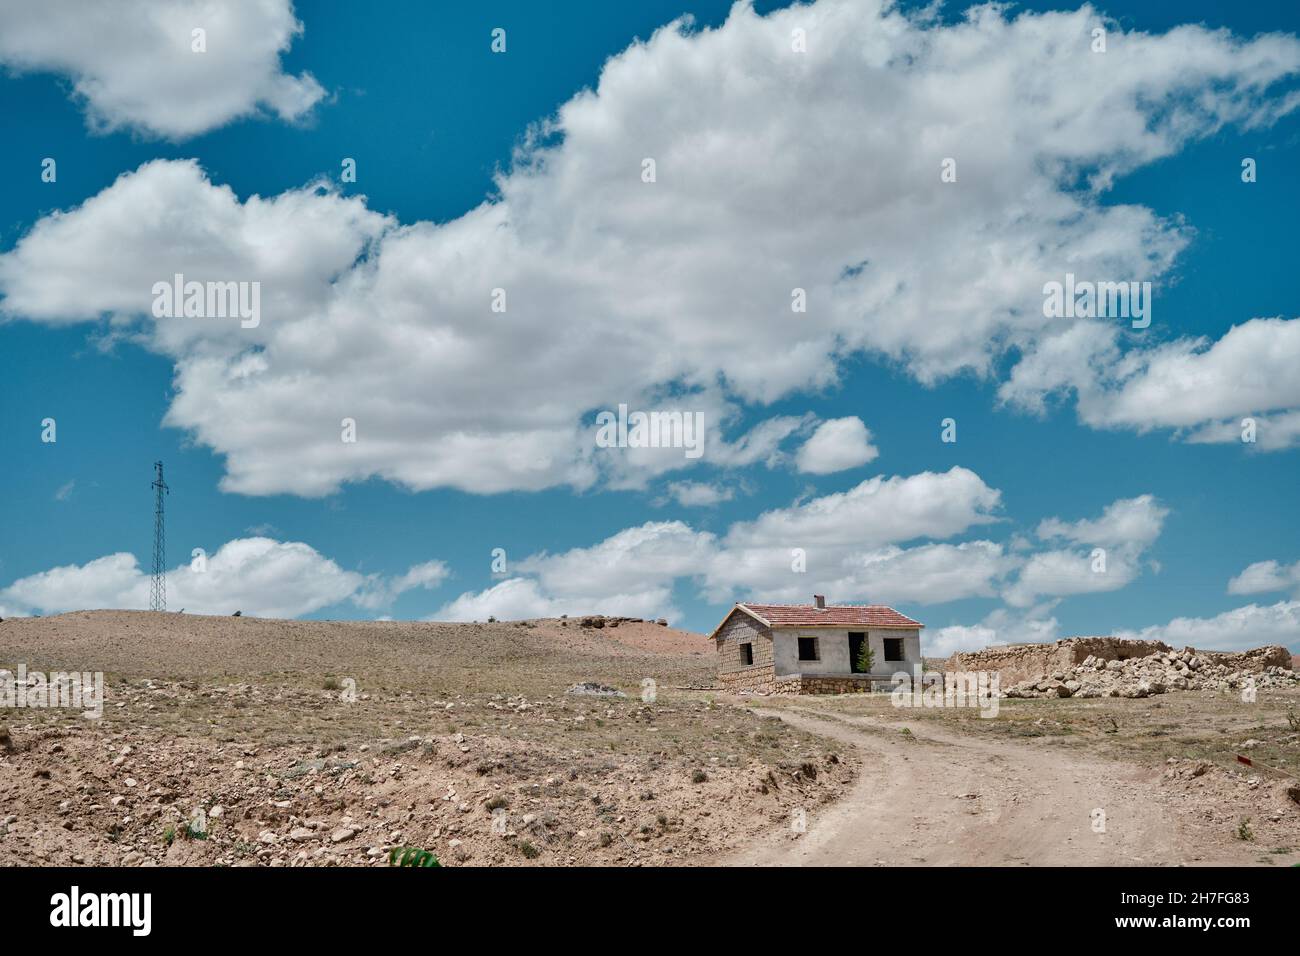 Typisches Dorfleben in der Mitte der Türkei. Dreckiger Weg, ein einziges altes Steinhaus mit rotem Ziegeldach. Herrliche Wolkenlandschaft Hintergrund toget Stockfoto